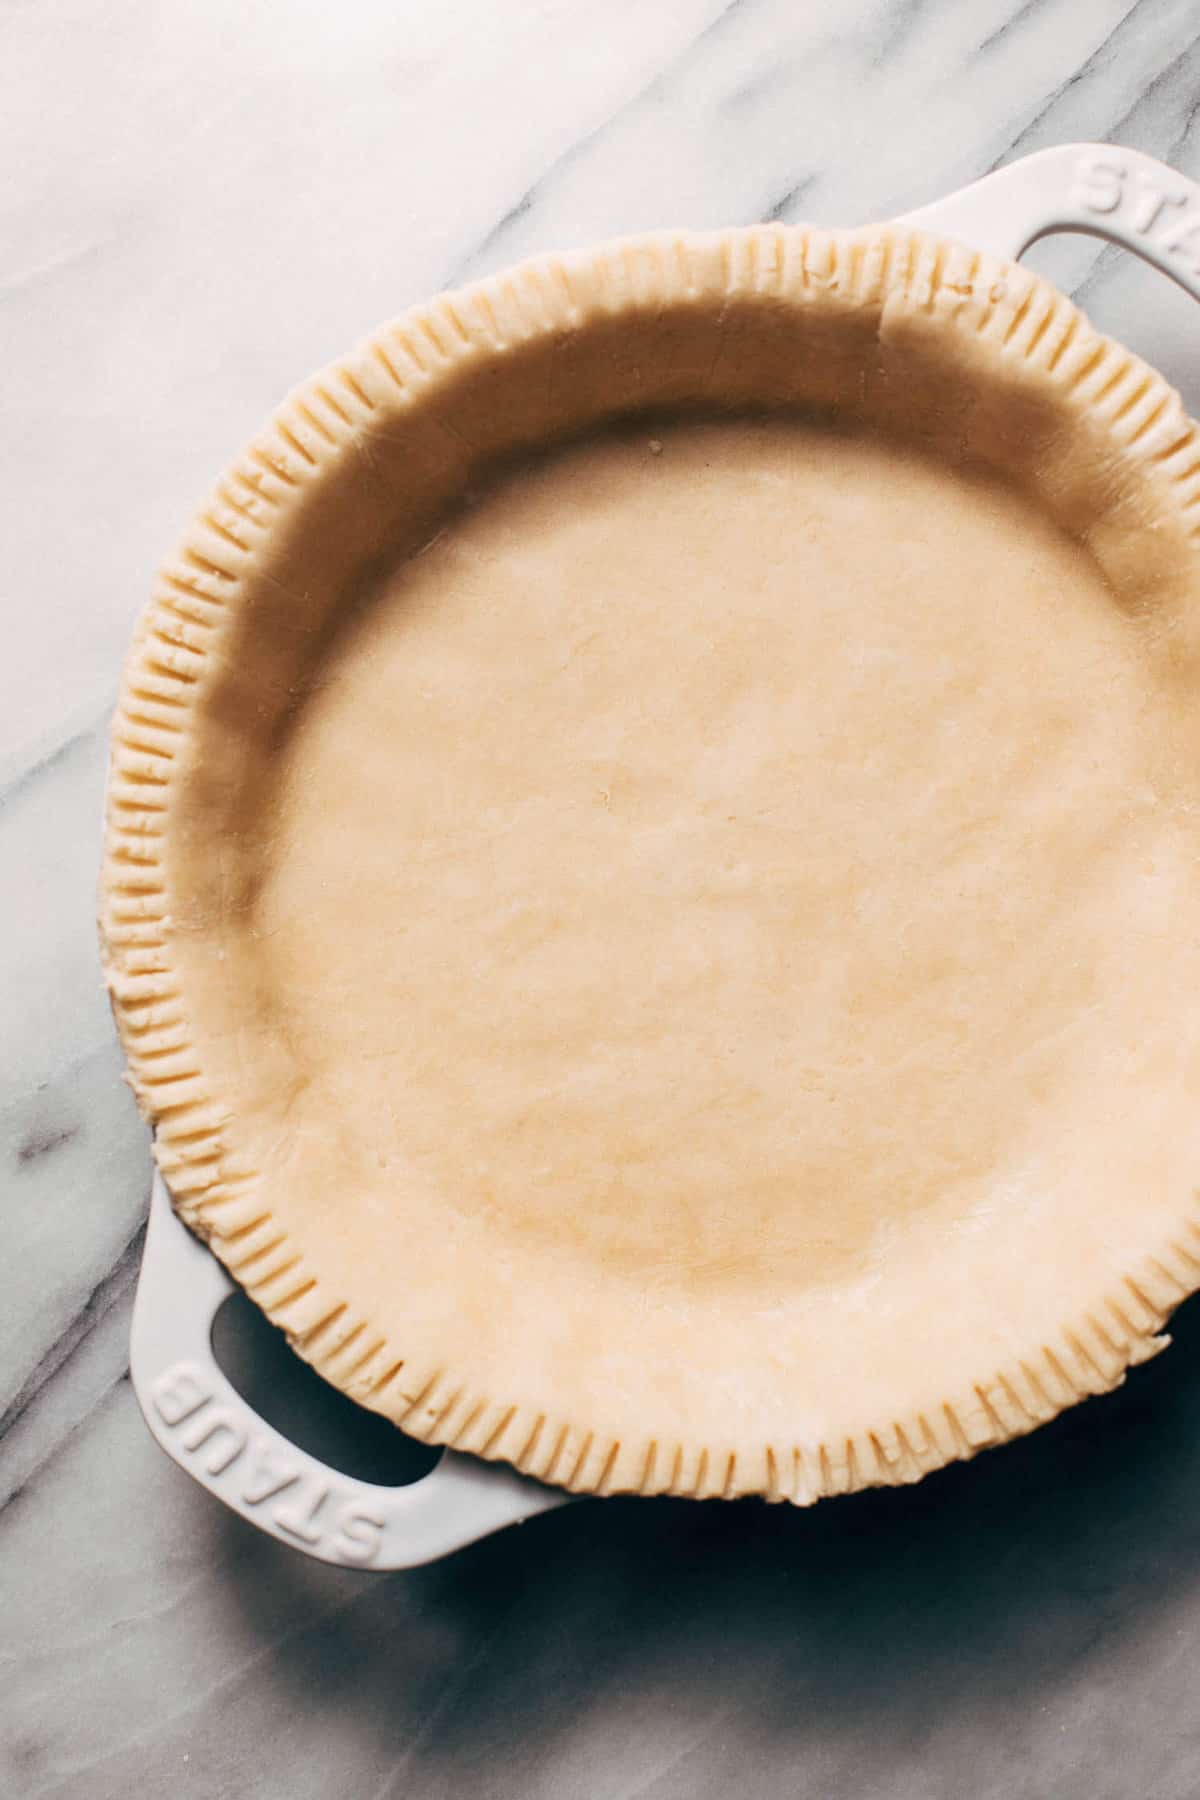 lard pie dough in a pie dish